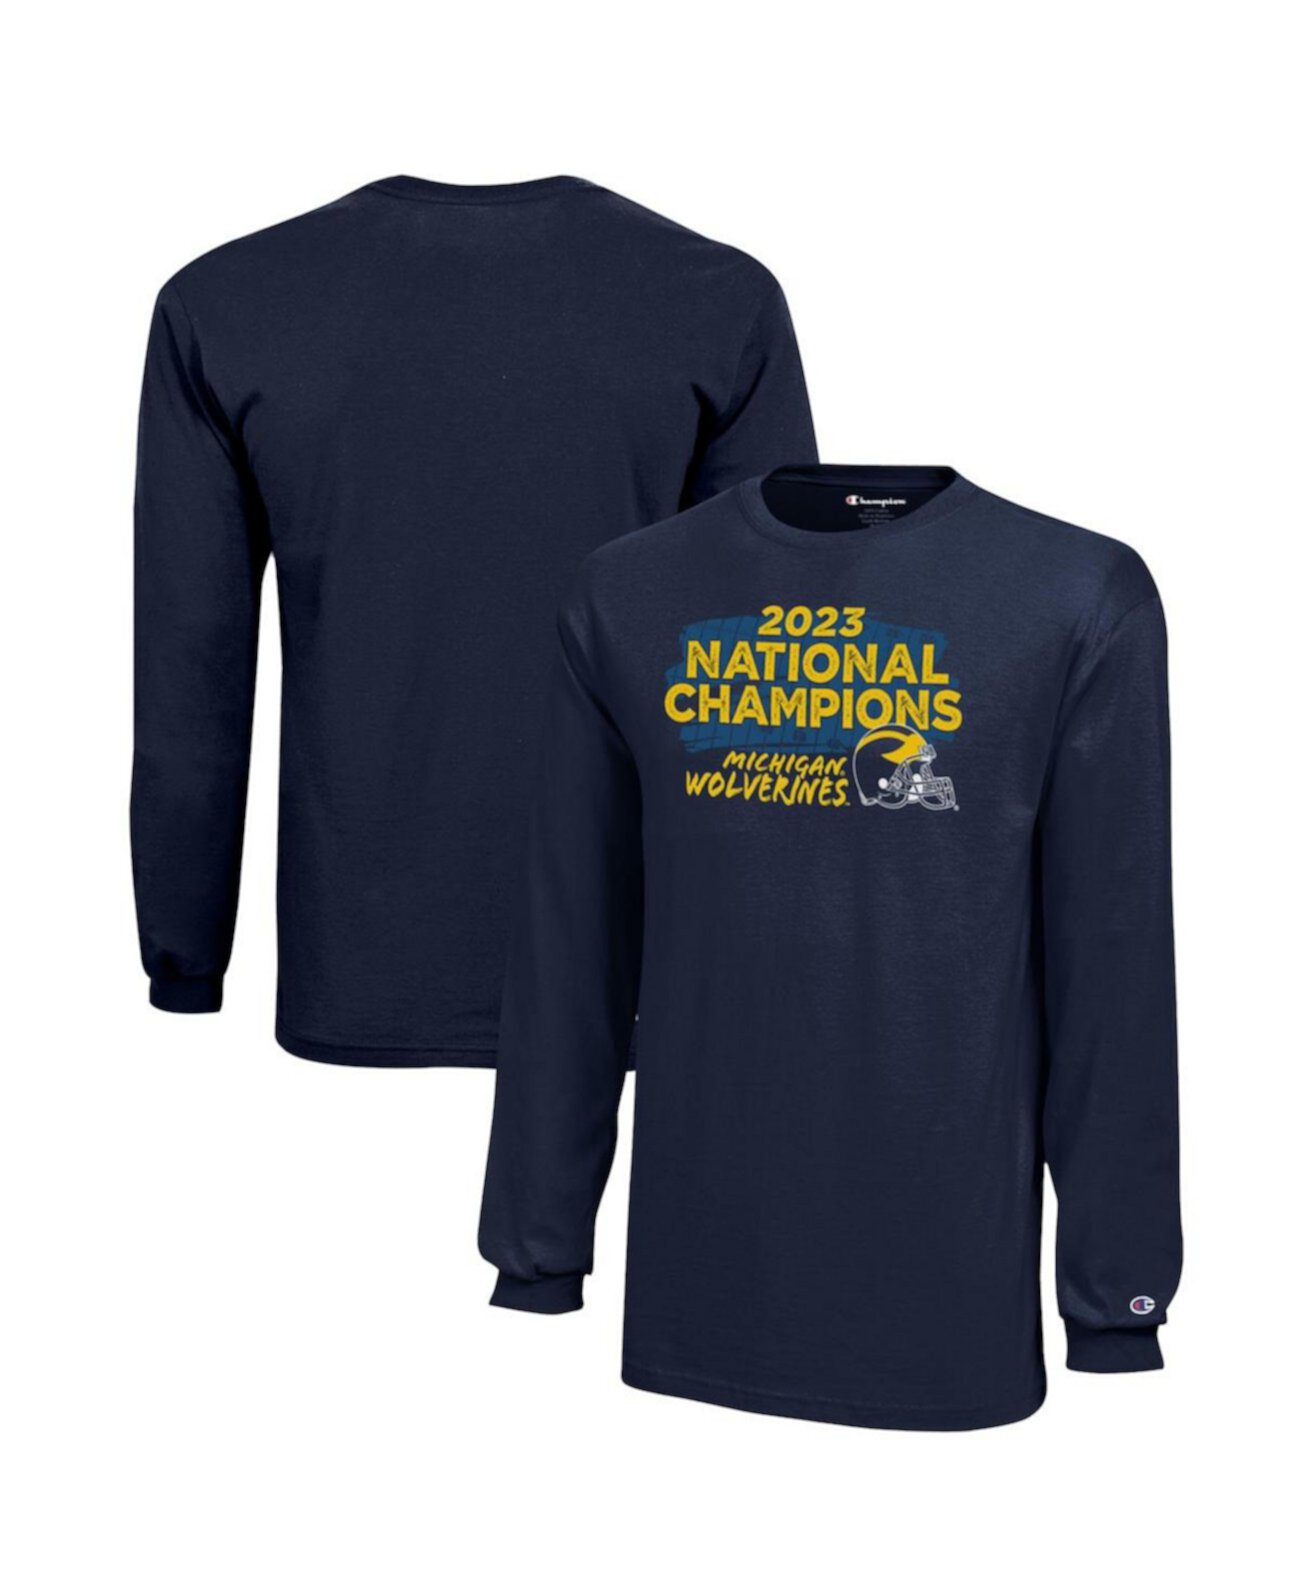 Молодежная футболка с длинными рукавами «Национальные чемпионы» плей-офф колледжа «Мичиган Росомахи» 2023 года Champion